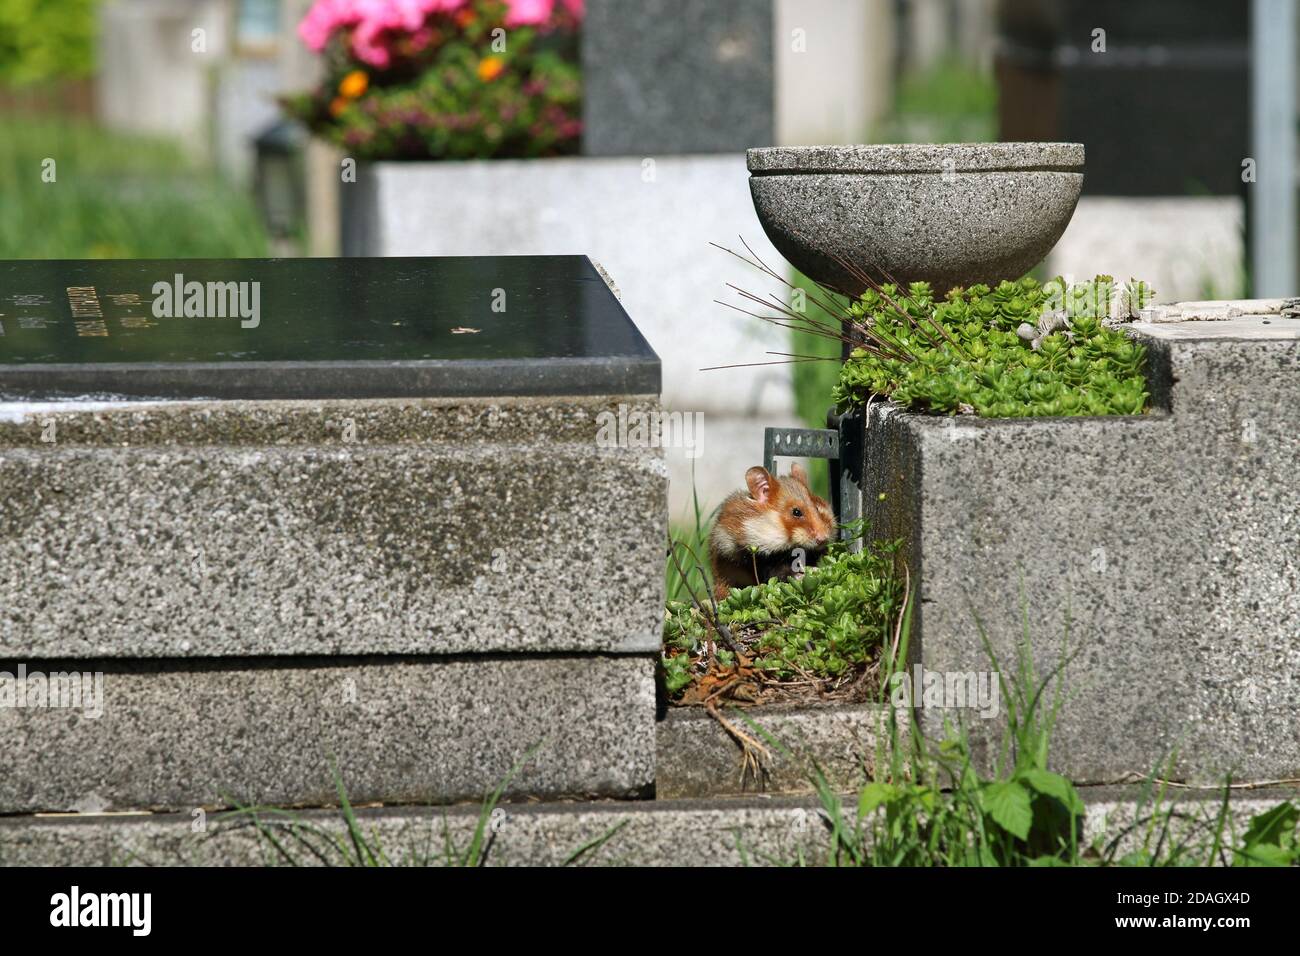 Hamster commun, hamster à ventre noir (Cricetus cricetus), assis sur une tombe avec des joues pleines, Autriche Banque D'Images